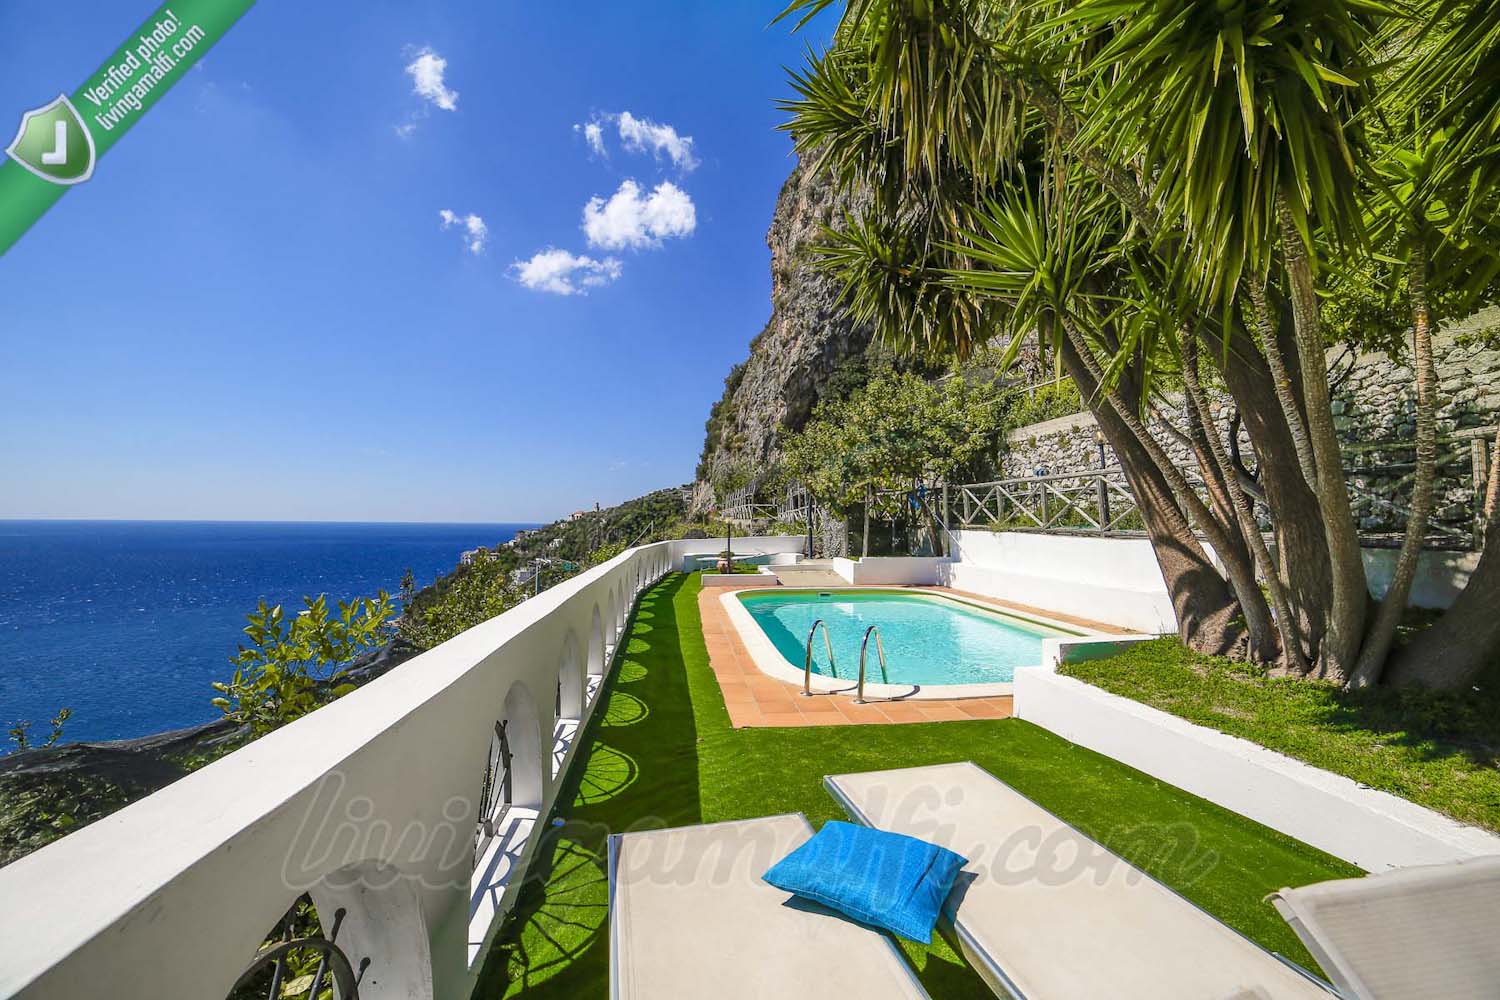 Vespero Villa with private pool and dependance apartment - Villa in Amalfi